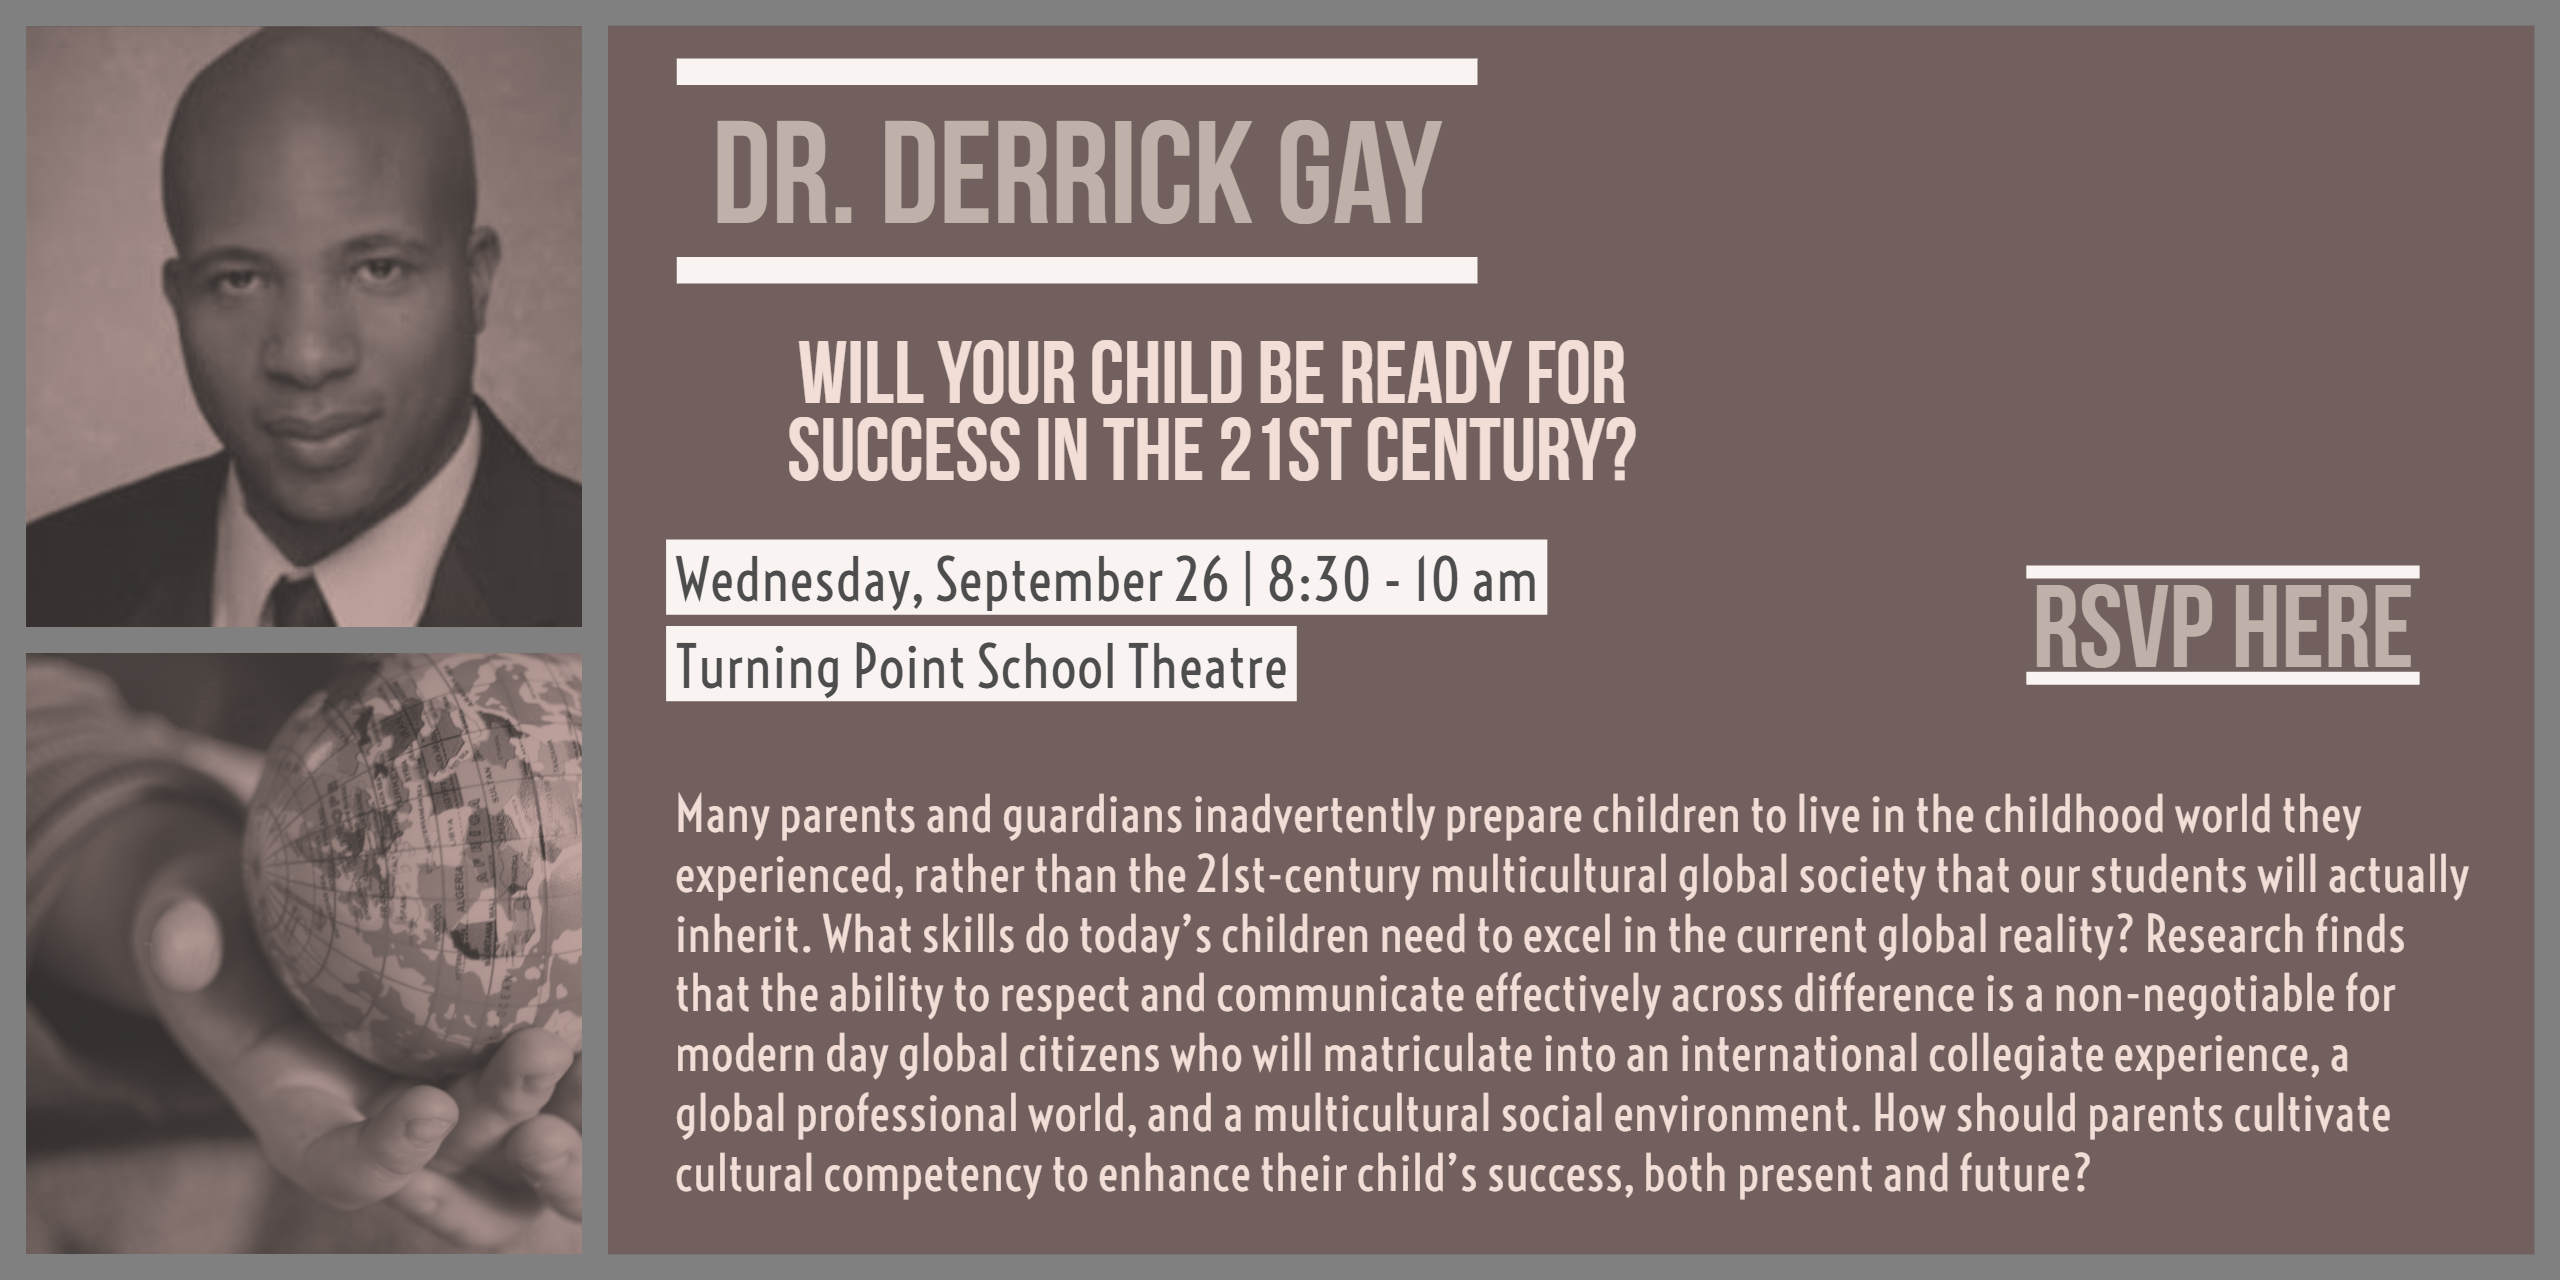 Dr. Derrick Gay